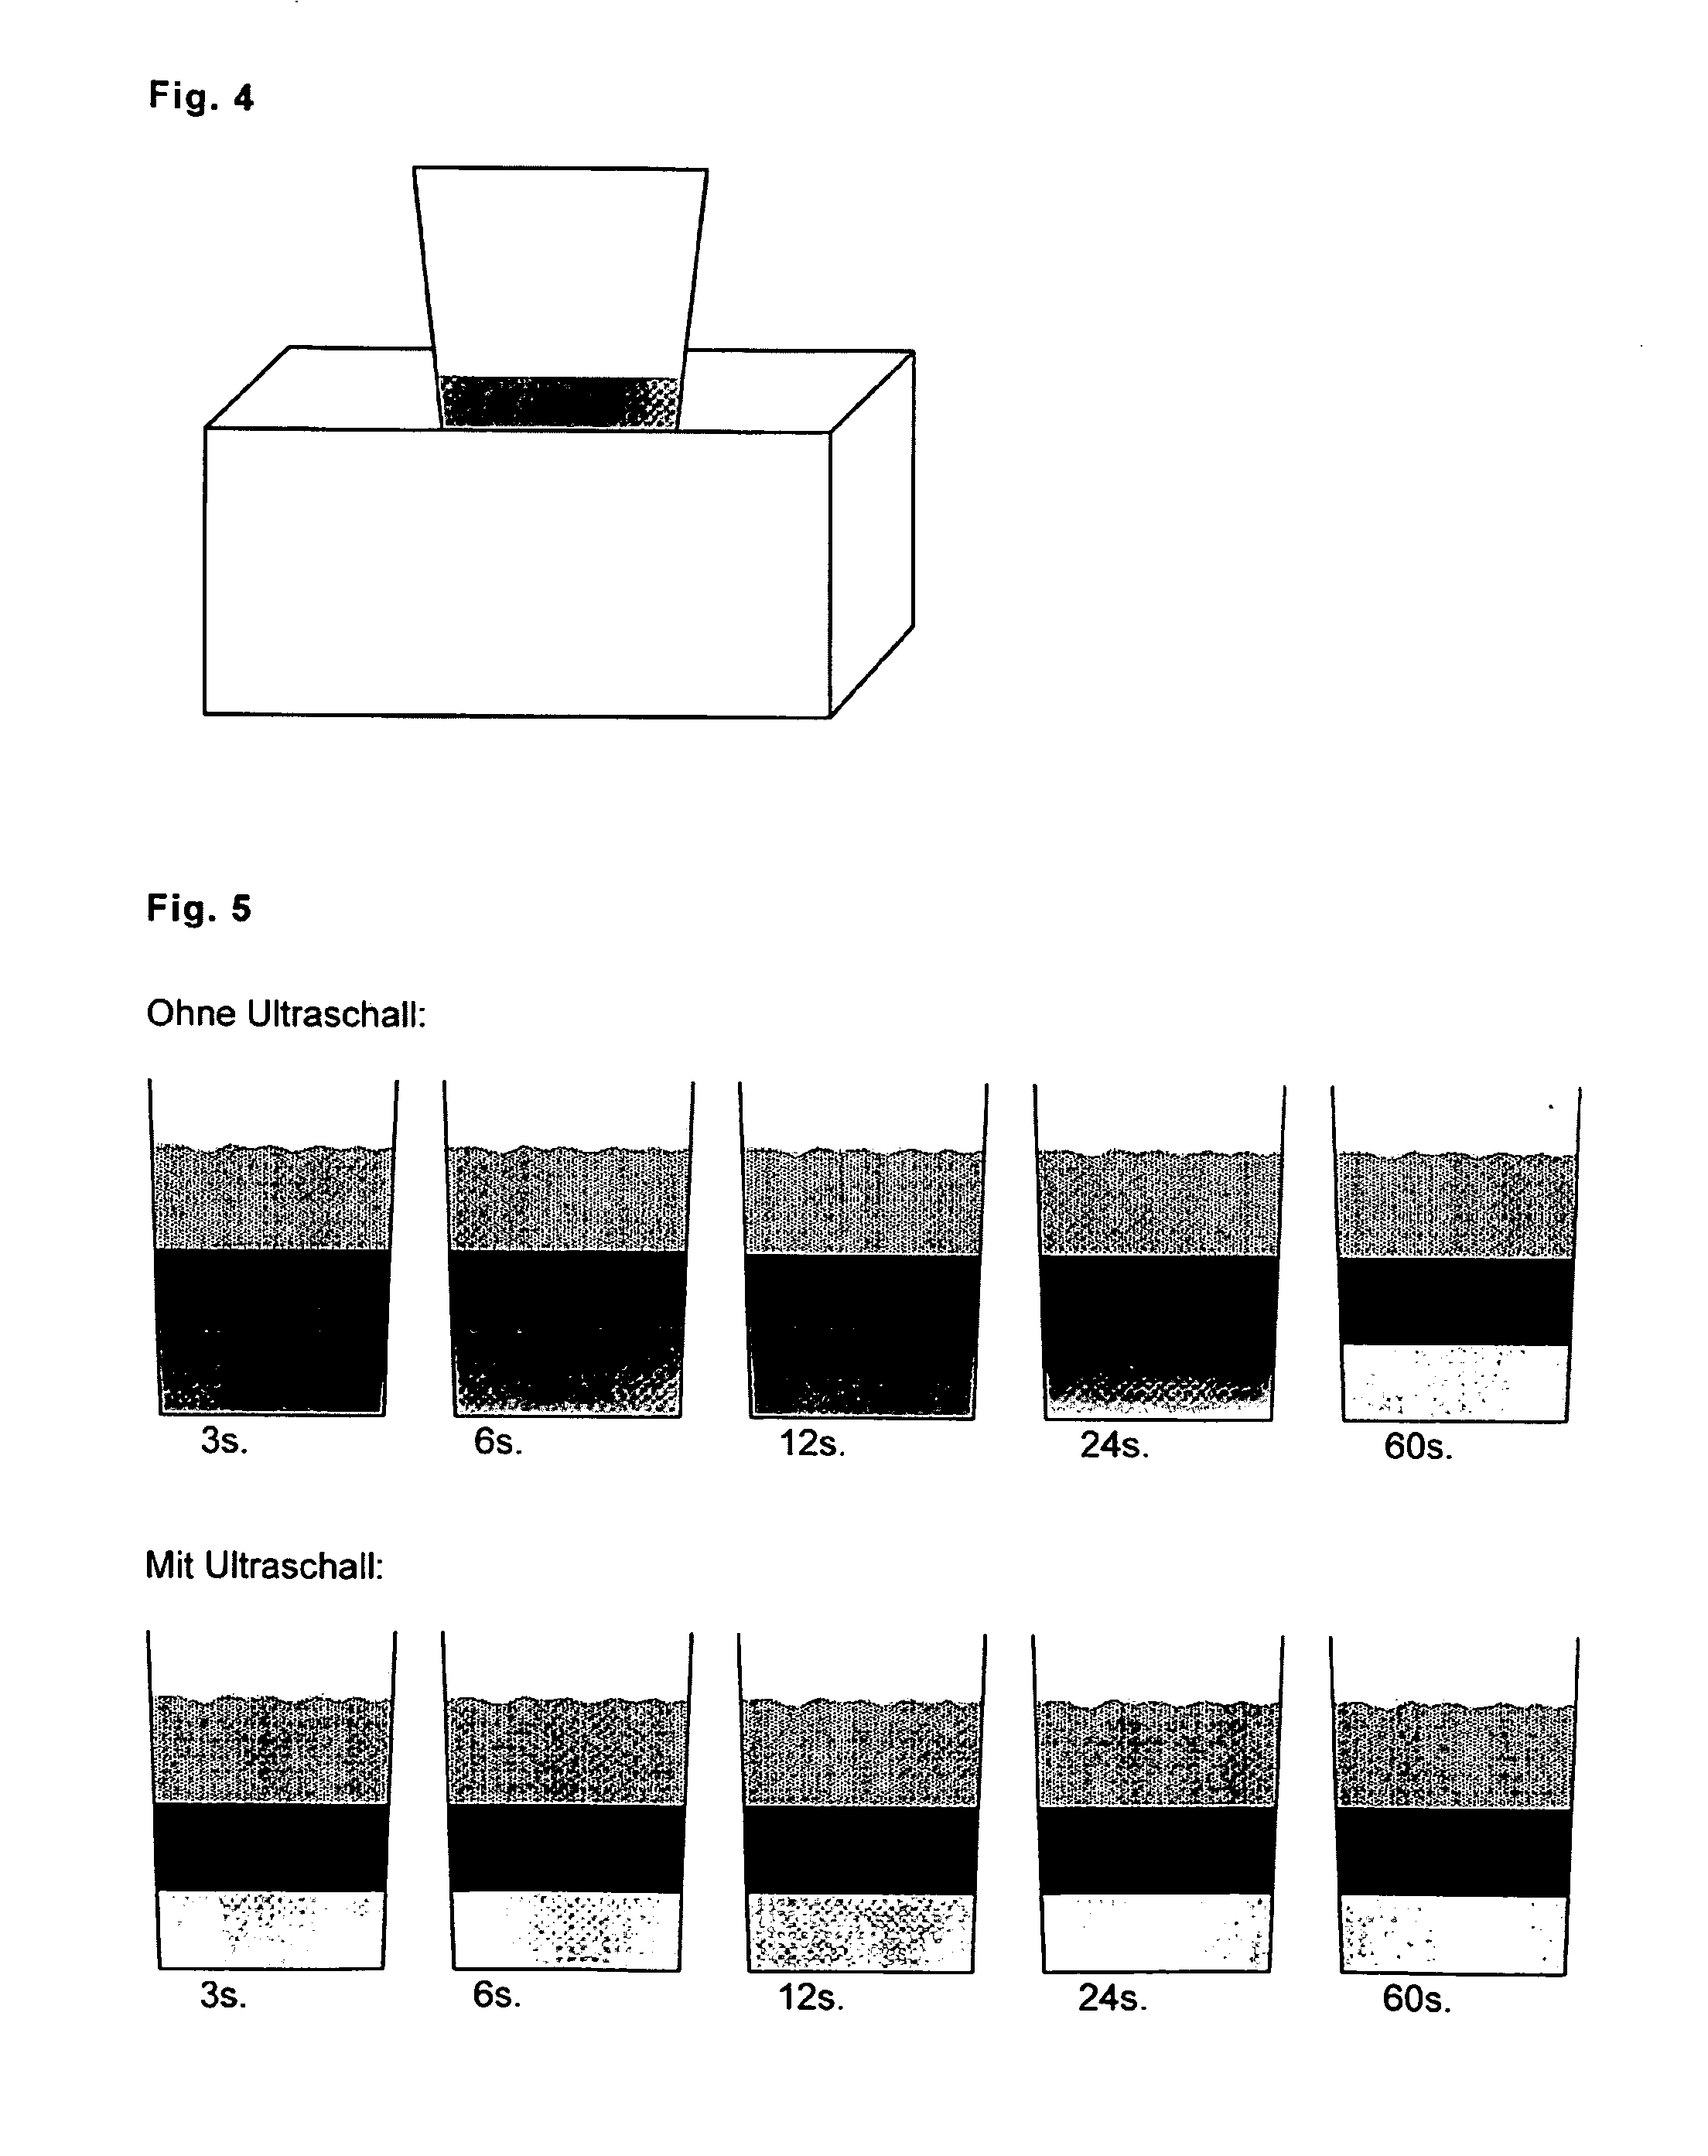 Process and apparatus for making caffe latte macchiato